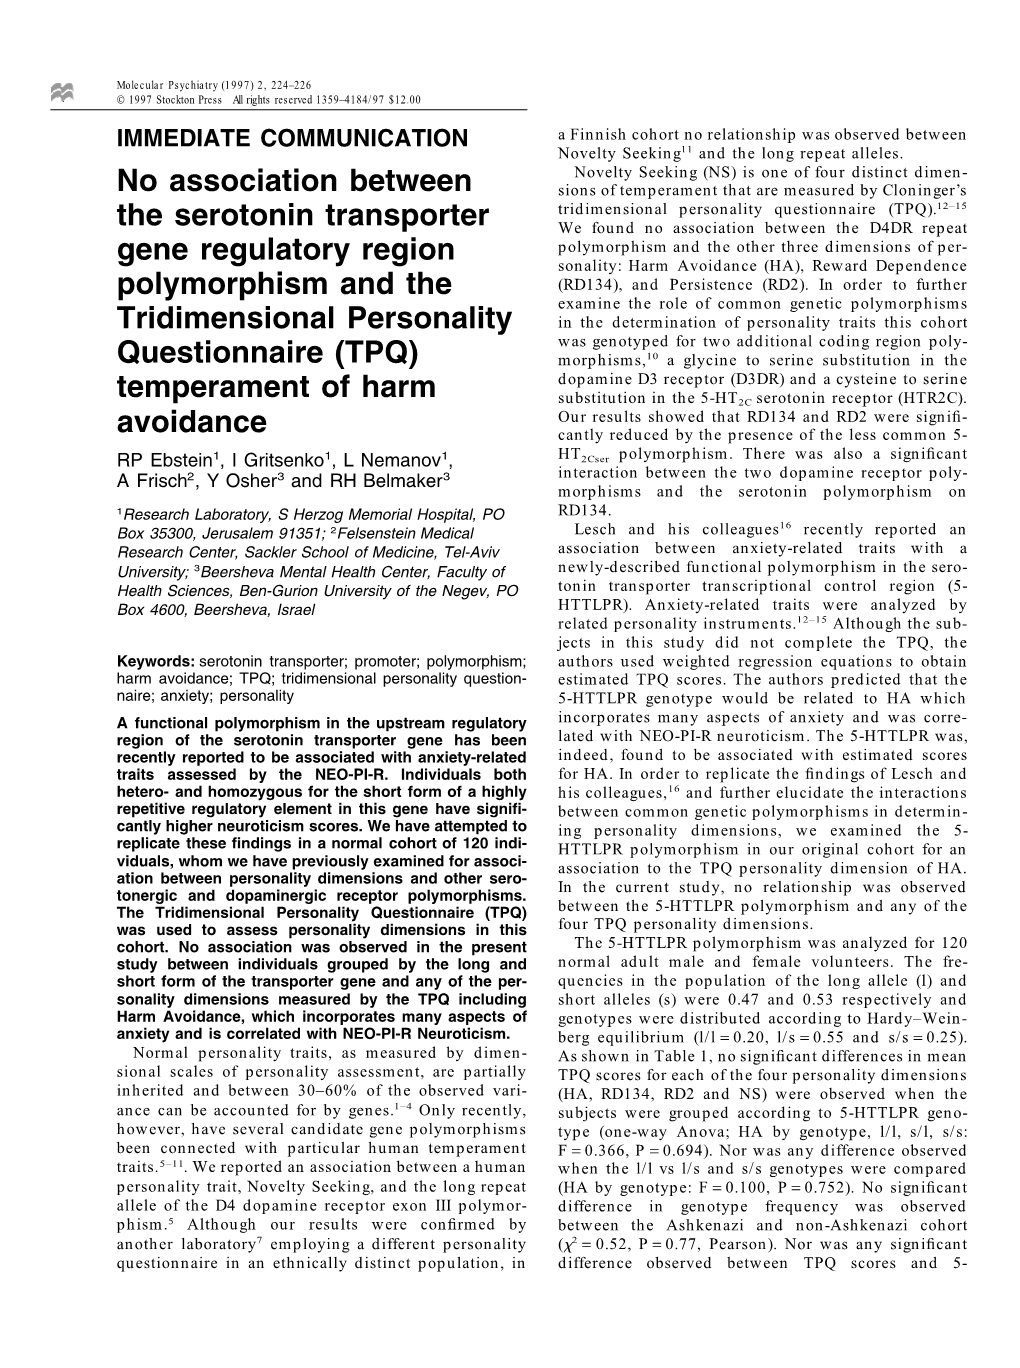 No Association Between the Serotonin Transporter Gene Regulatory Region